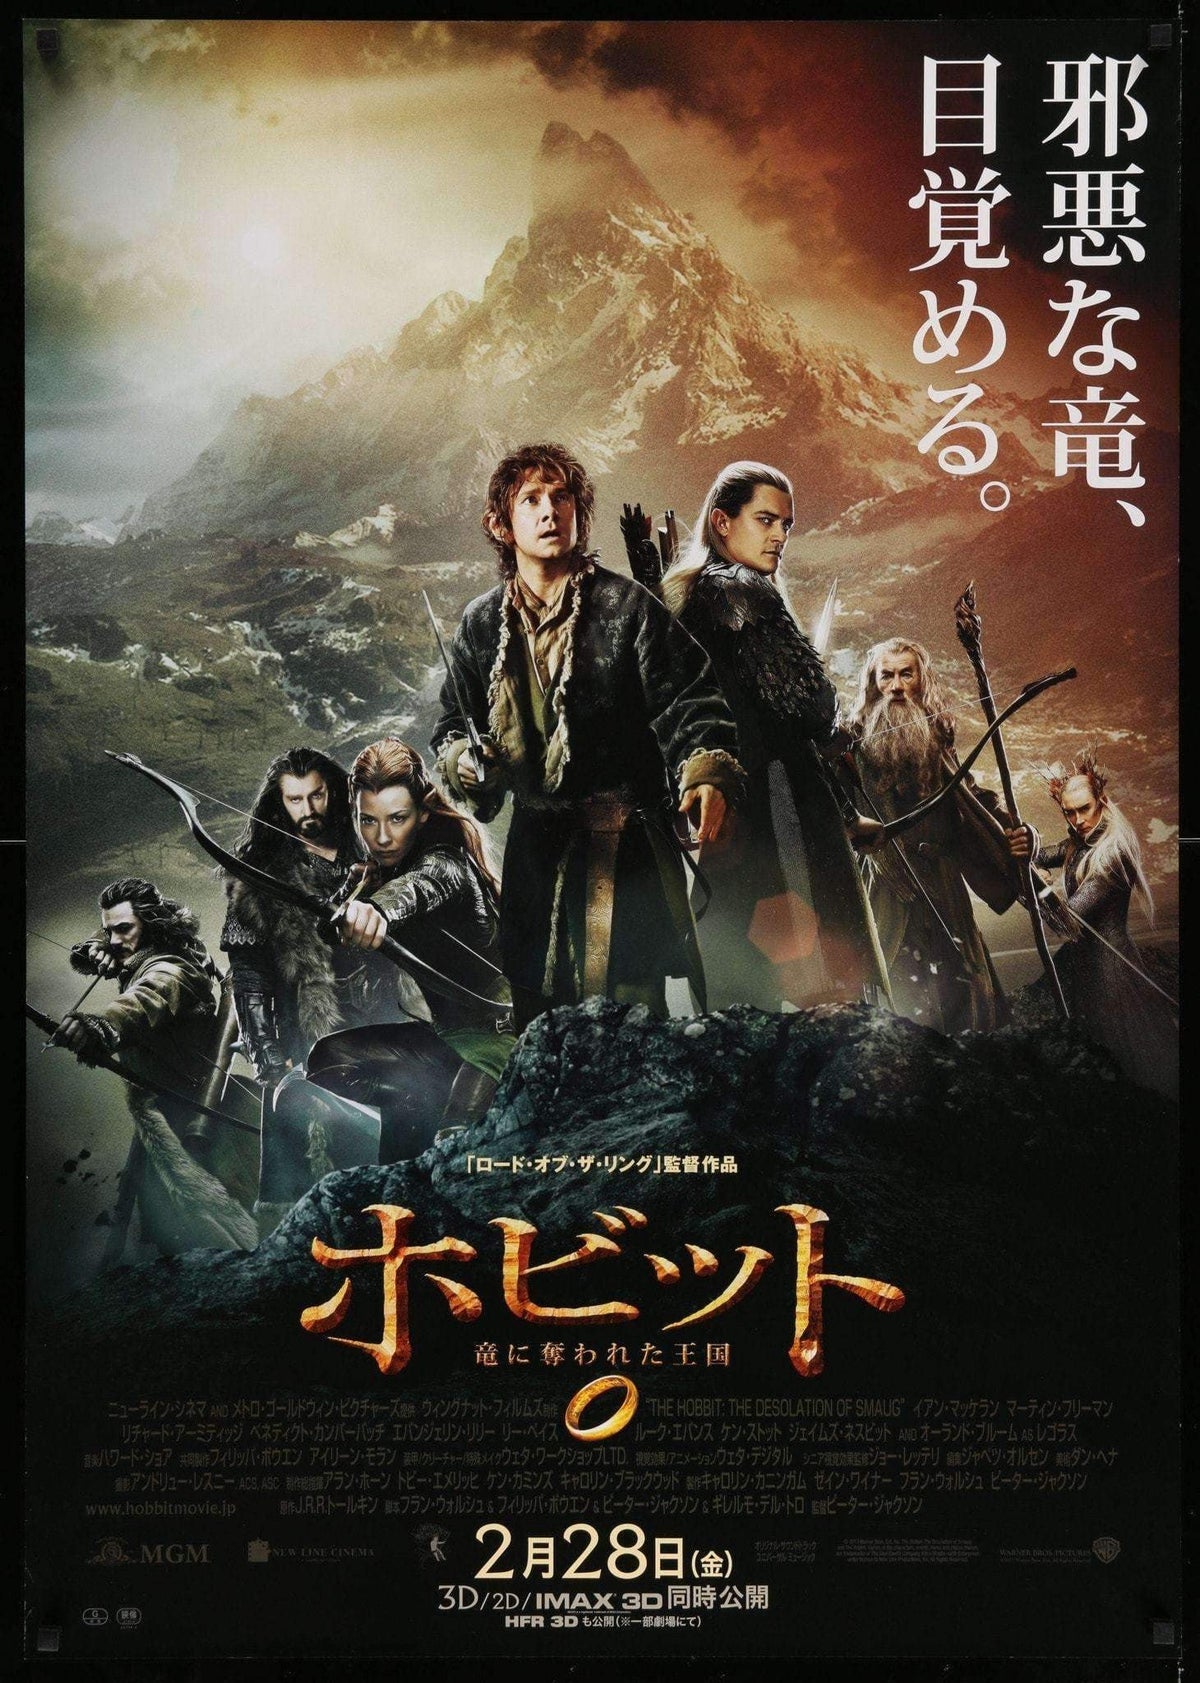 Hobbit: The Desolation of Smaug (2013) original movie poster for sale at Original Film Art